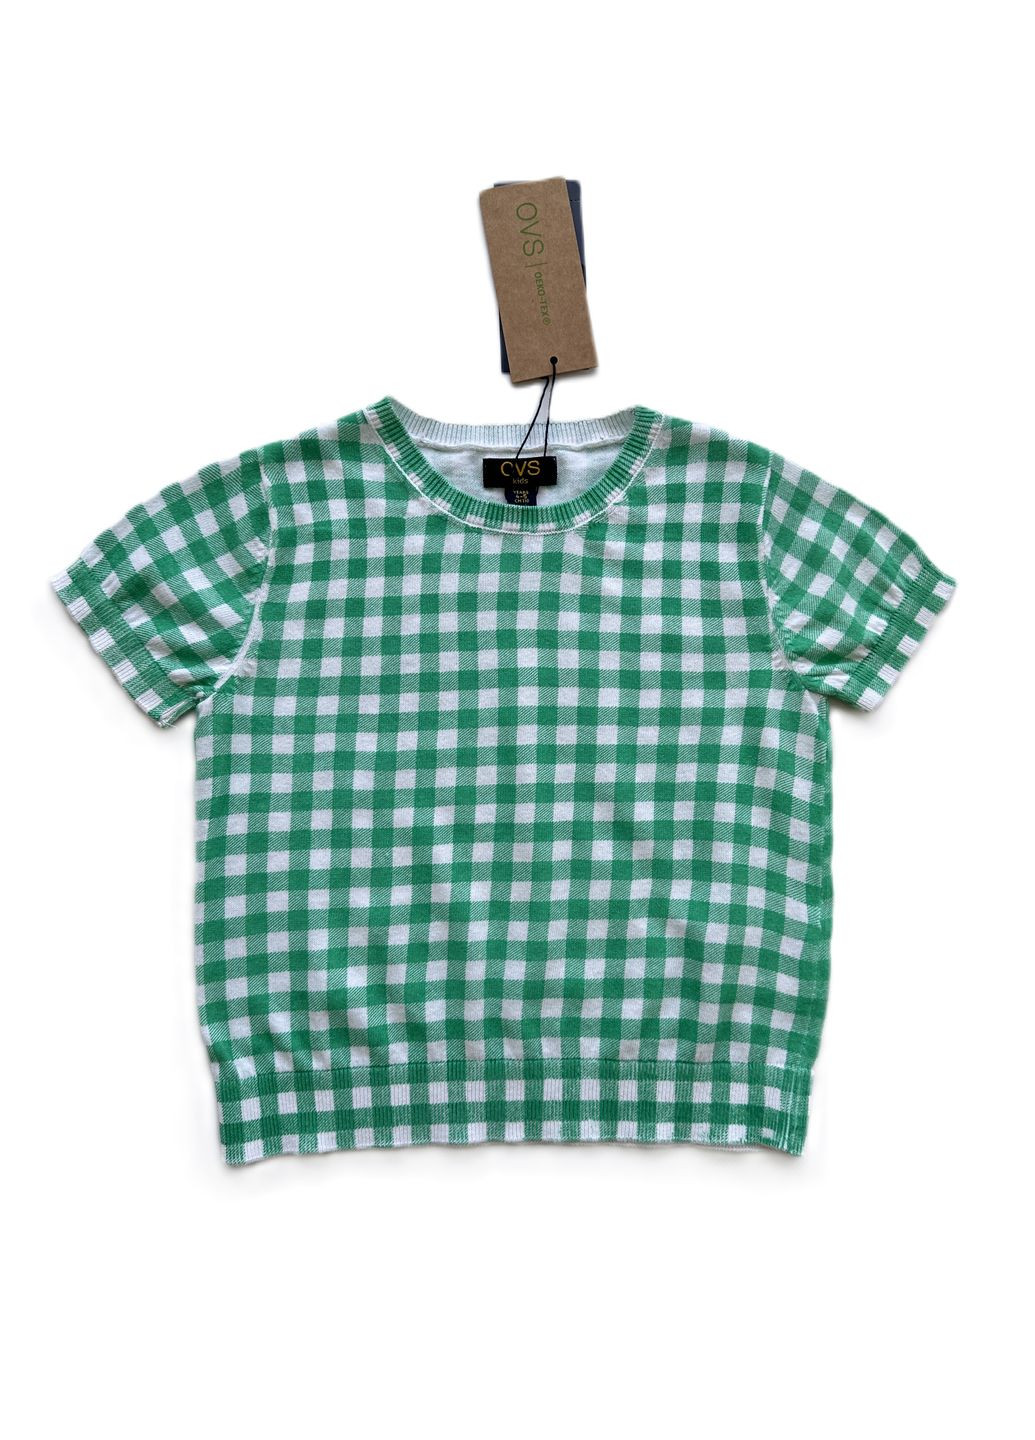 Зеленый летний комплект для девочки футболка в клетку зеленая 2000-15 + леггинсы темно-синие трикотажные 2000-16 (110 см) OVS